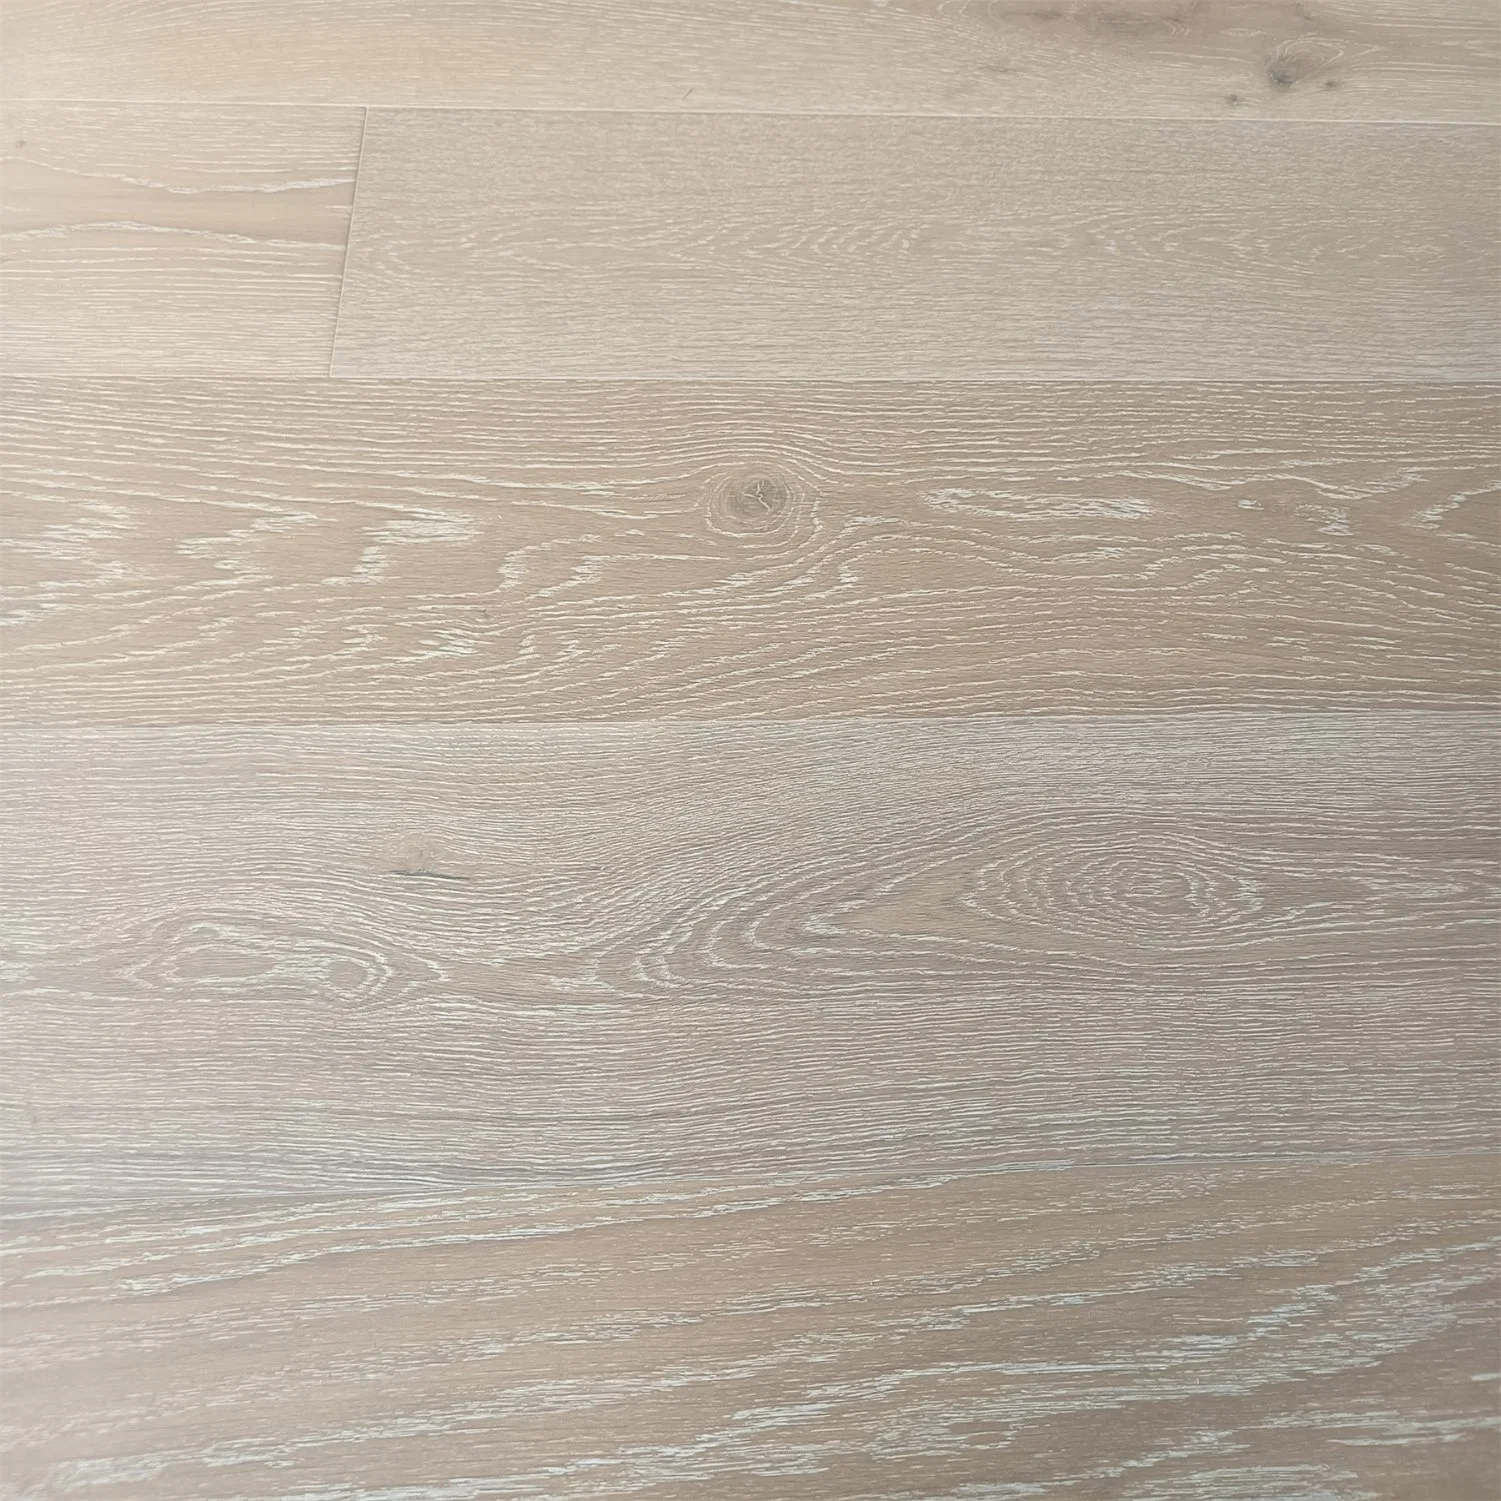 Hochwertige Innenausbau Holzboden Eiche Decking Timber Produkte